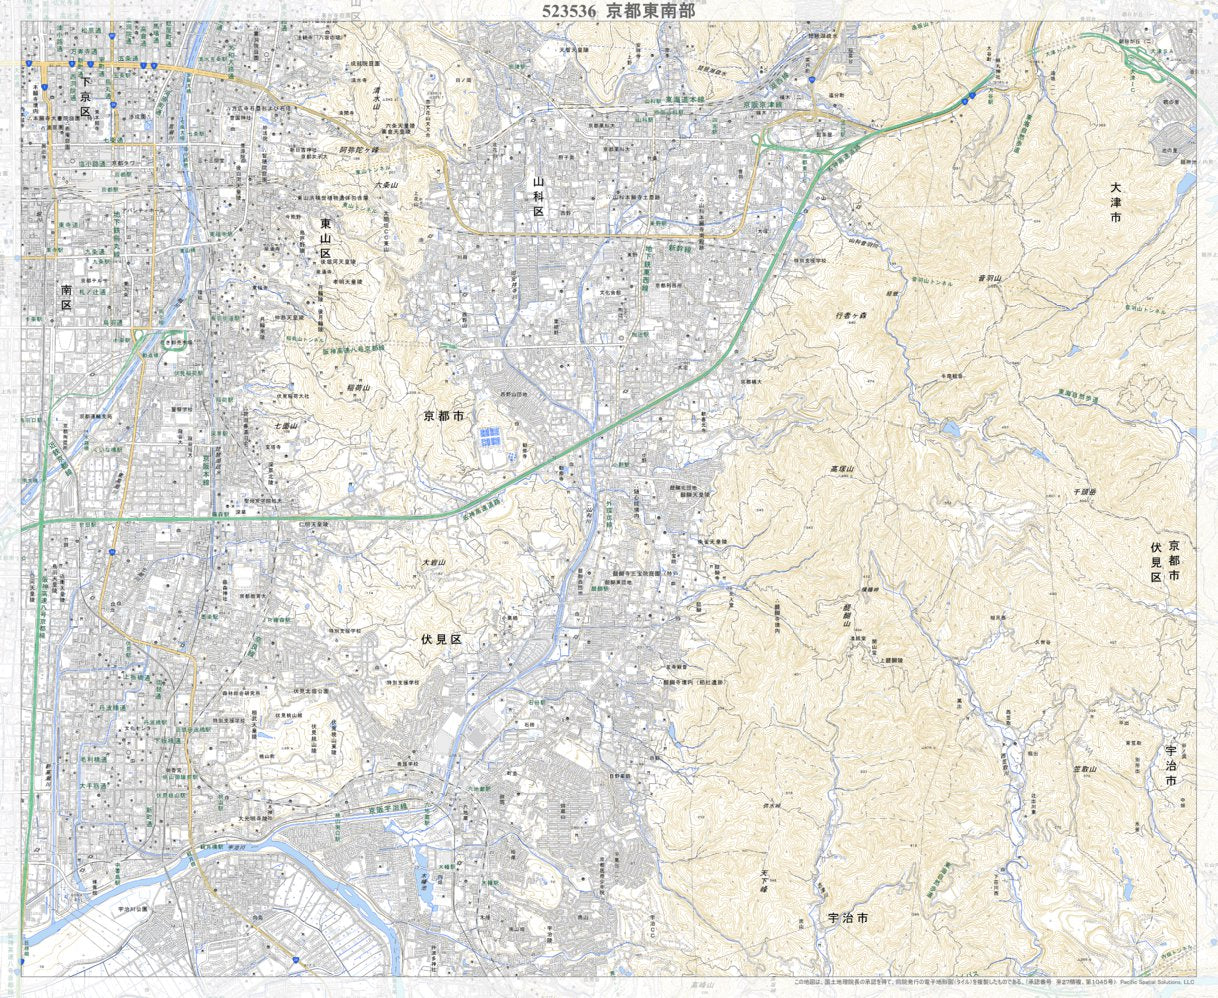 523536 京都東南部（きょうととうなんぶ Kyototonambu）, 地形図 Map 